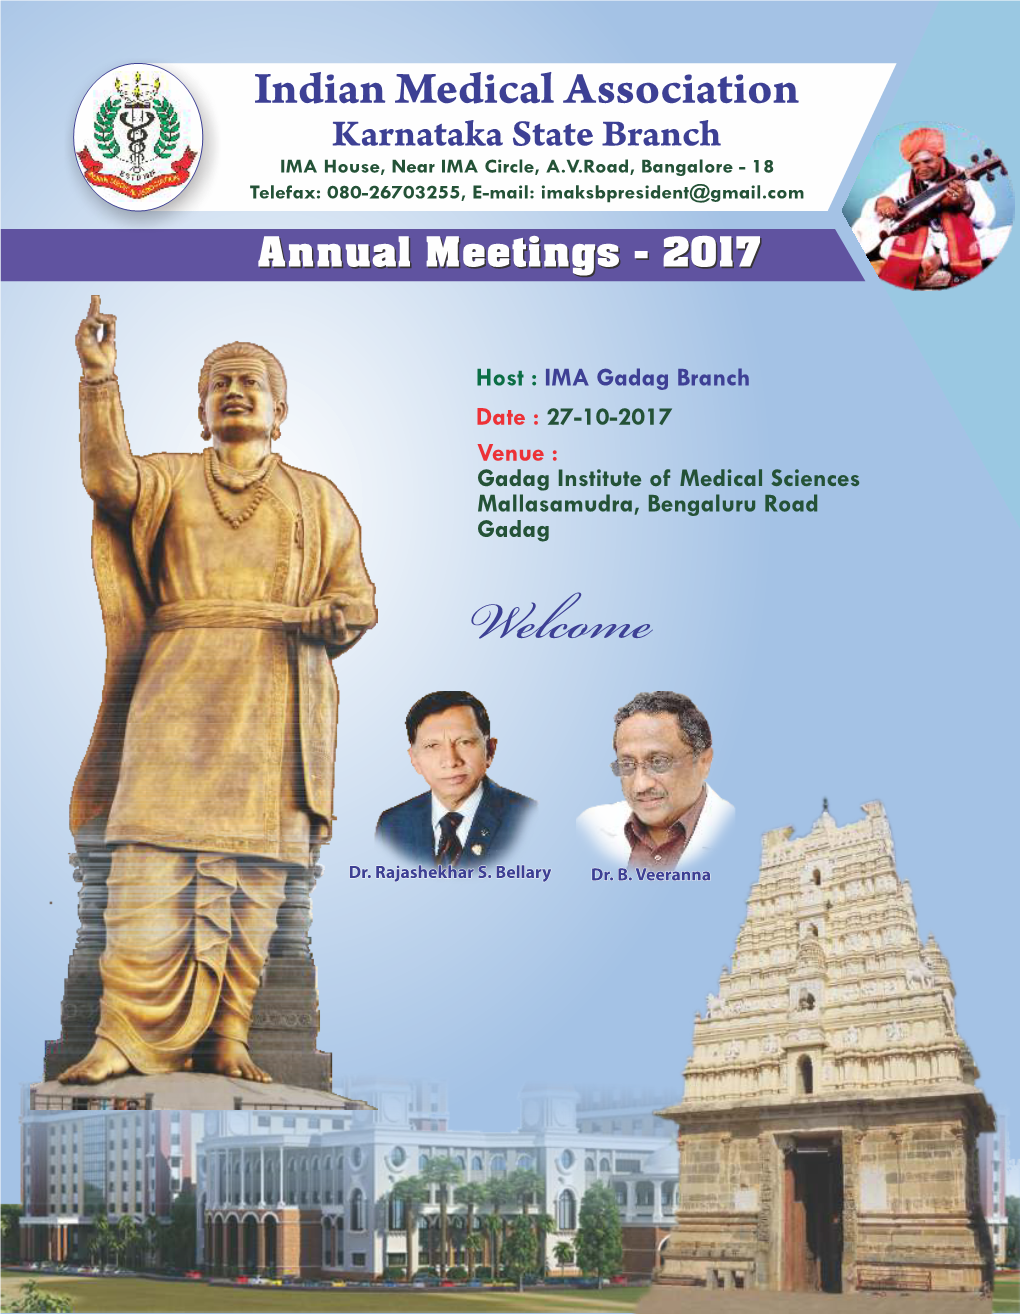 Annual Meetings - 2017